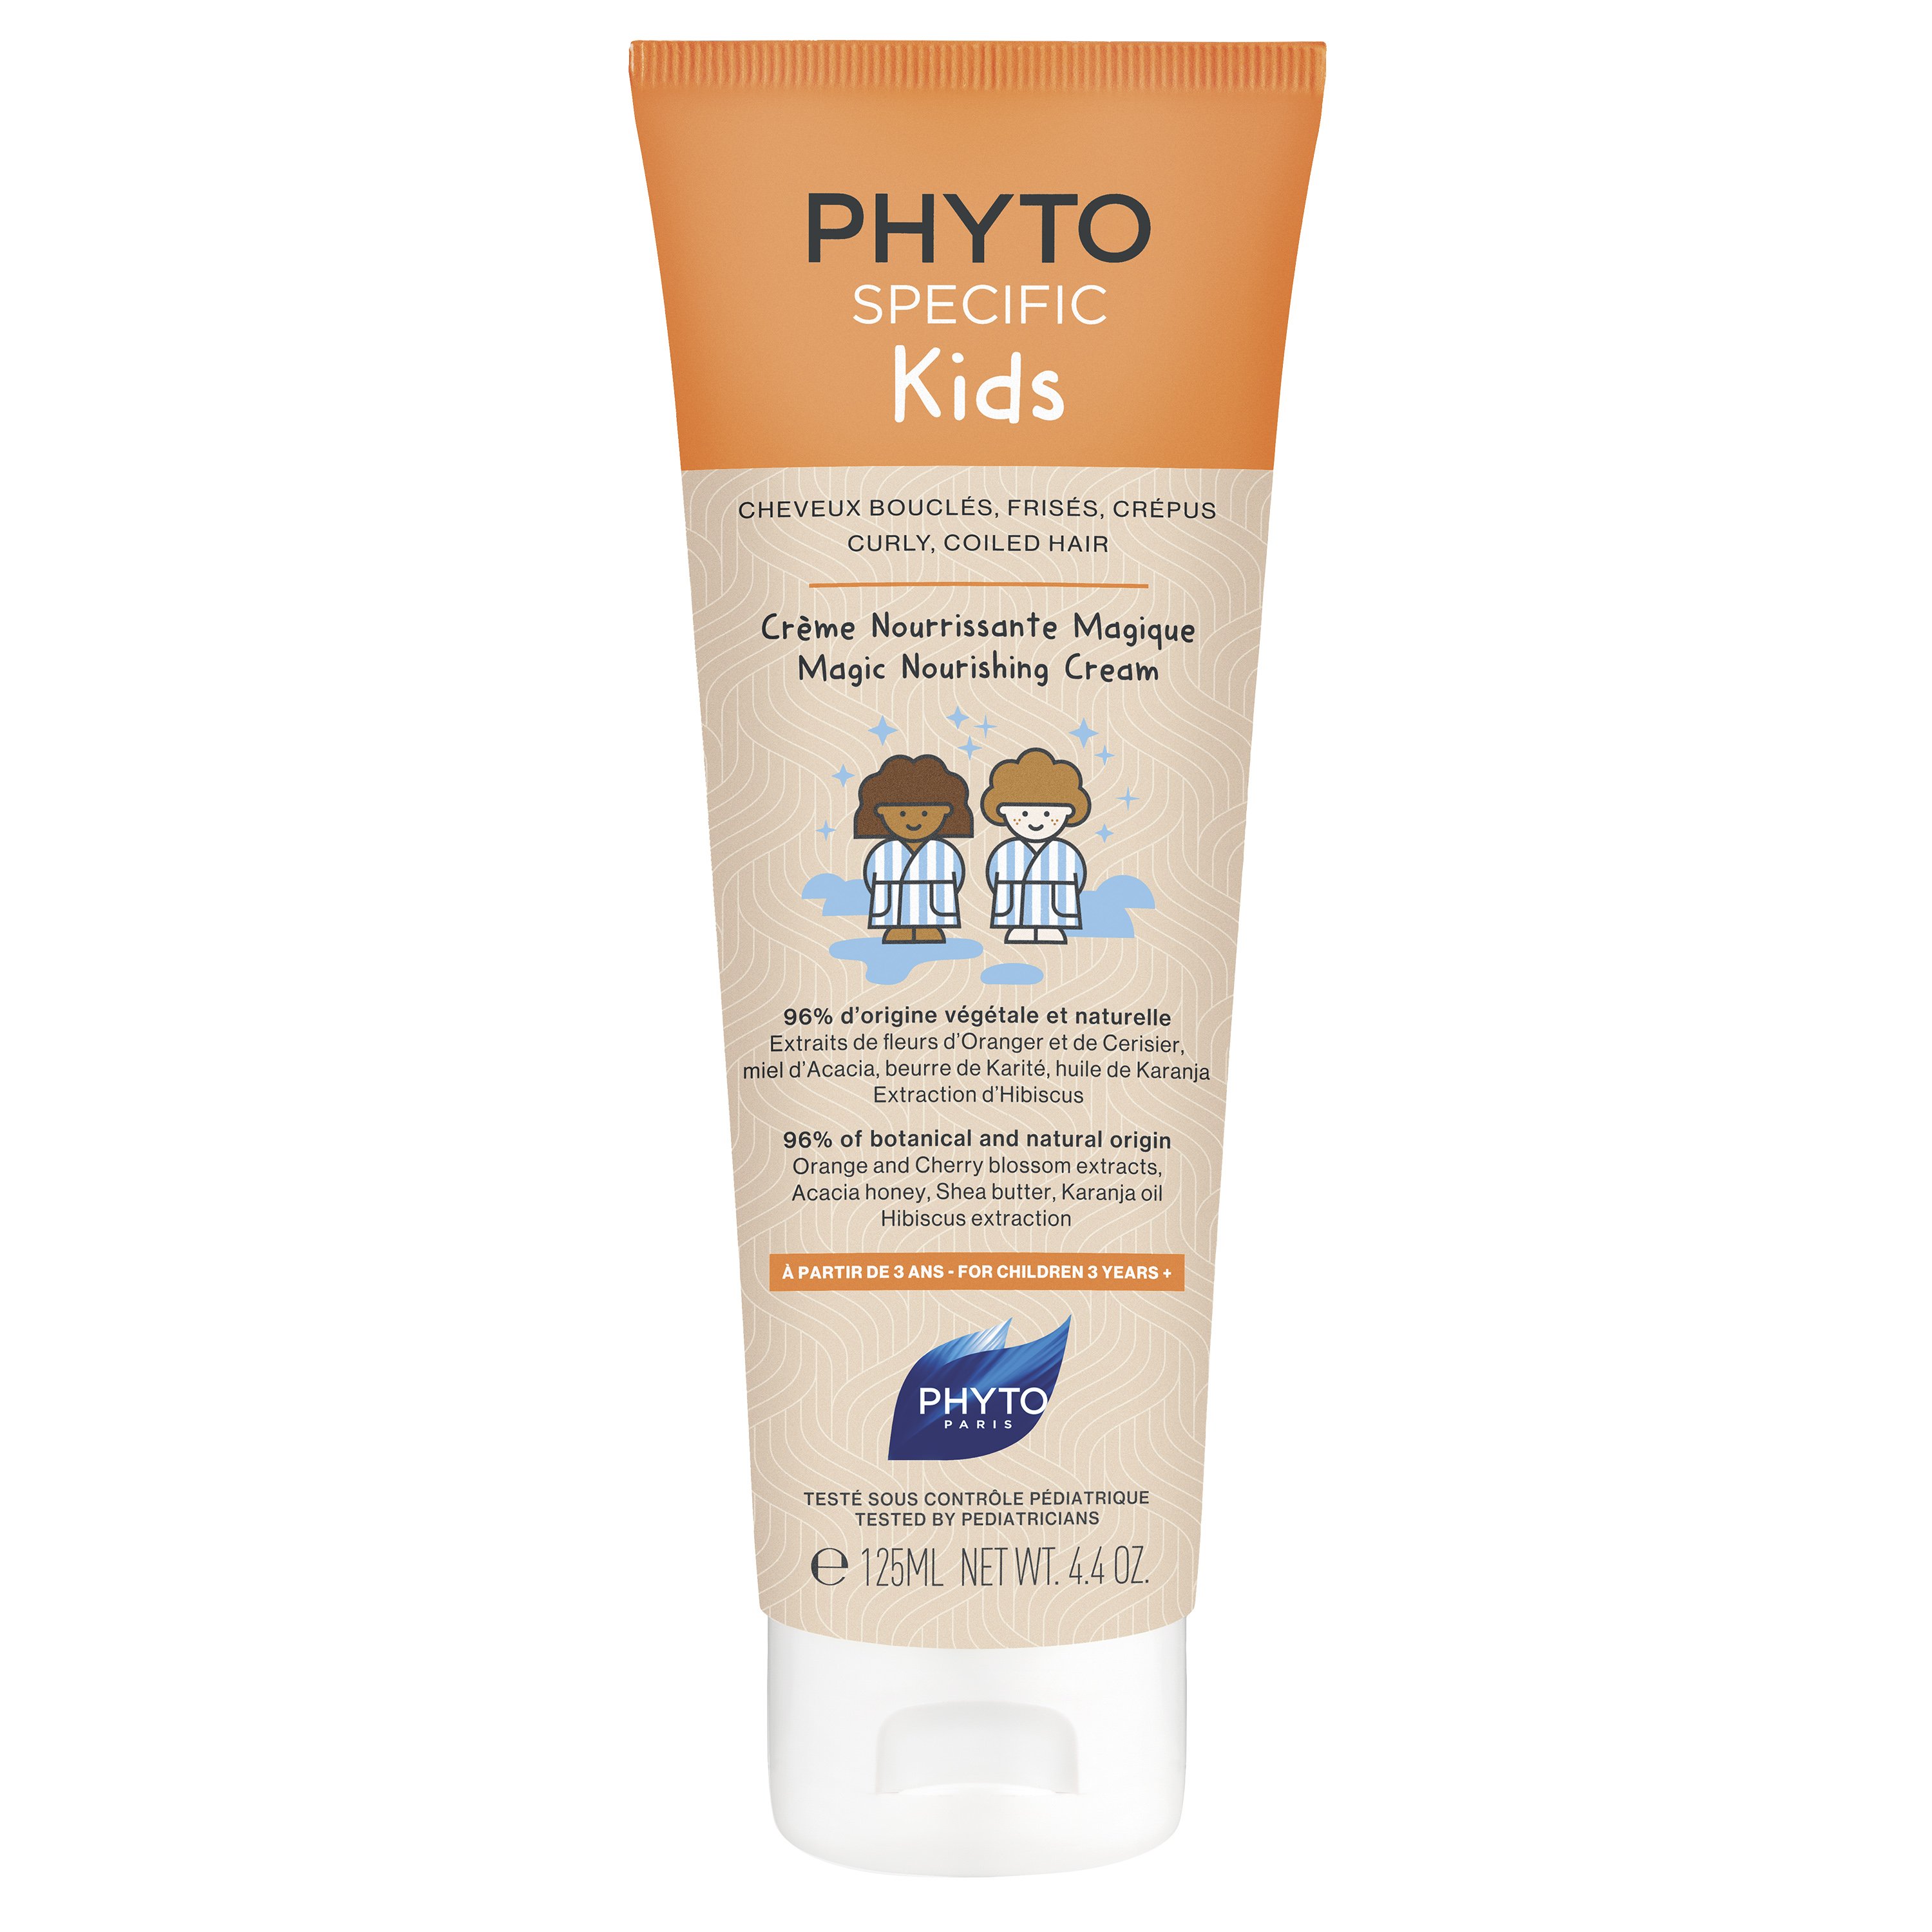 Phyto Phytospecific Kids Magic Nourishing Cream Παιδική - Μαγική Κρέμα Θρέψης για Σπαστά, Σγουρά Μαλλιά 125ml 39985